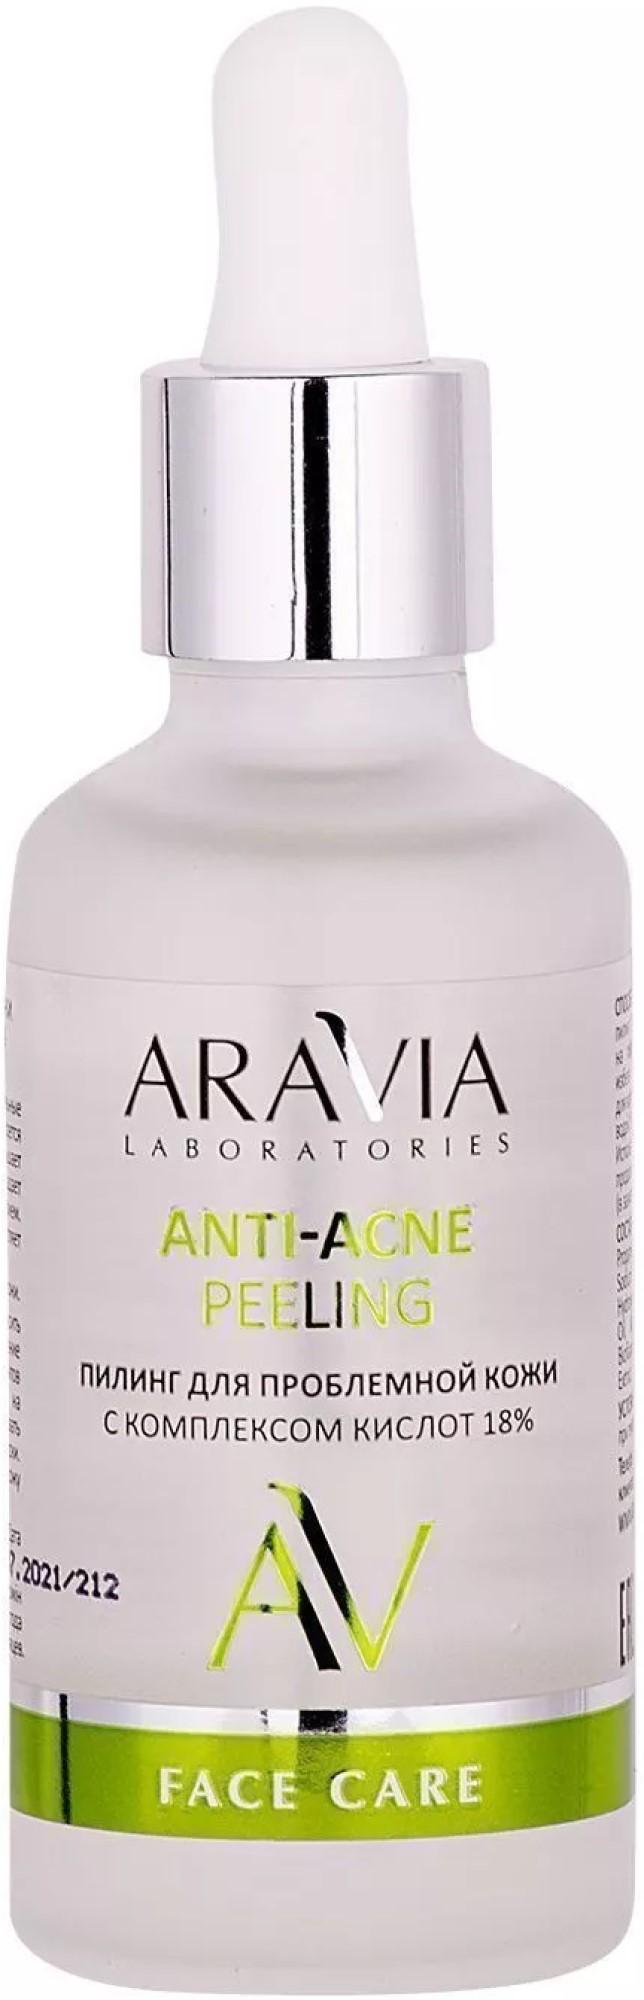 Aravia Laboratories 18% Anti-Acne